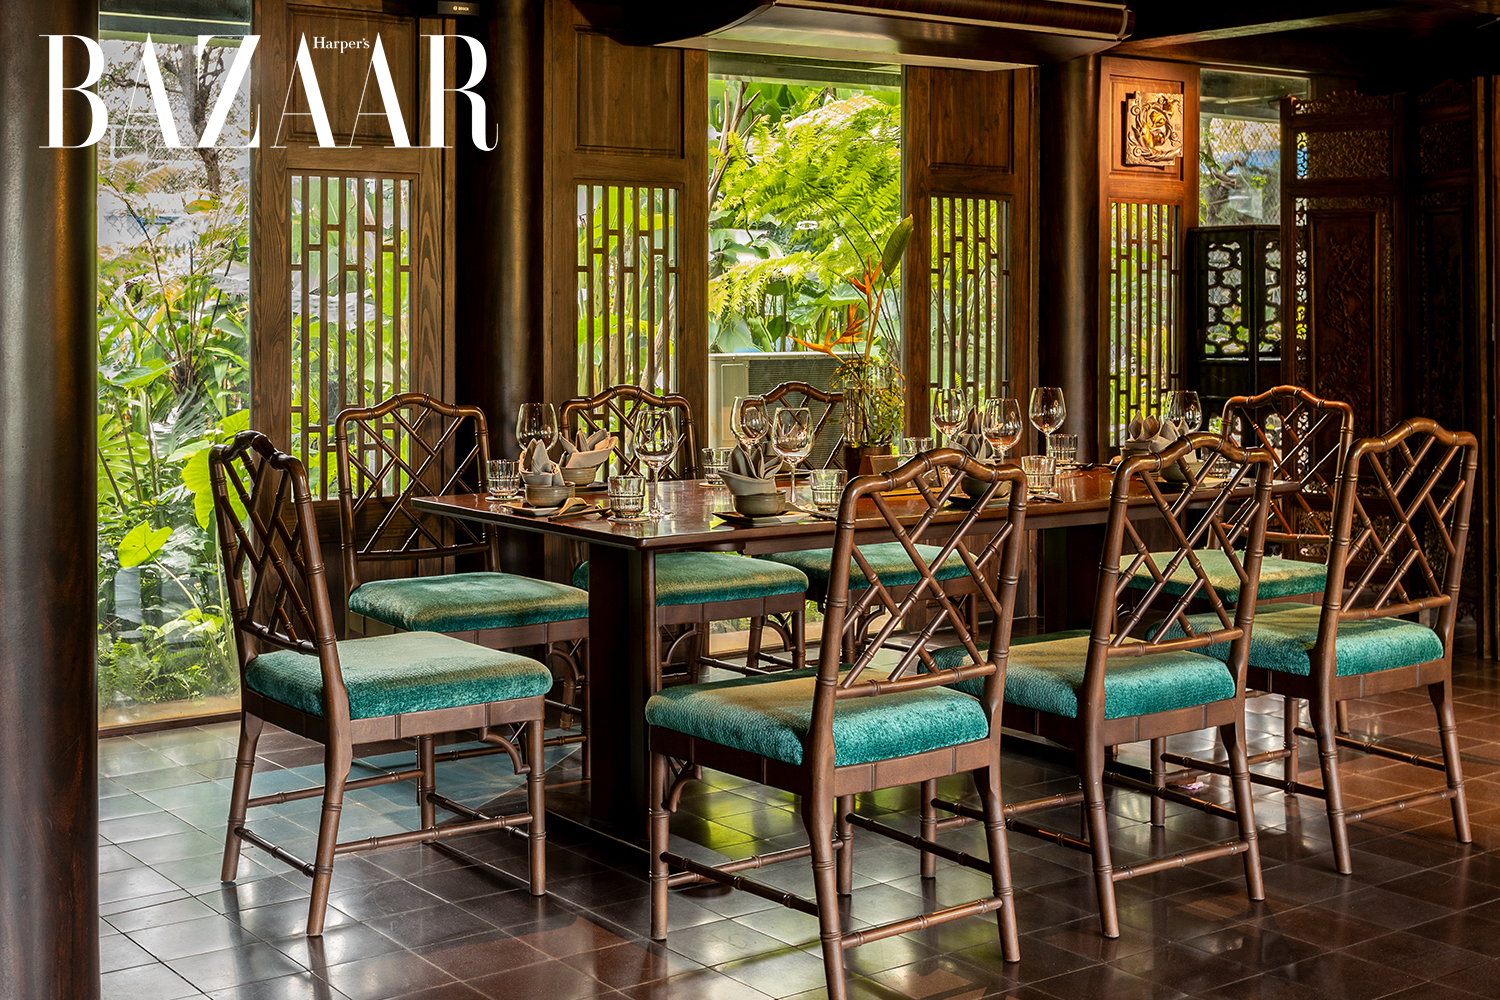 Nhà hàng LAGarden - Miền xanh thơ mộng giữa lòng Sài Gòn